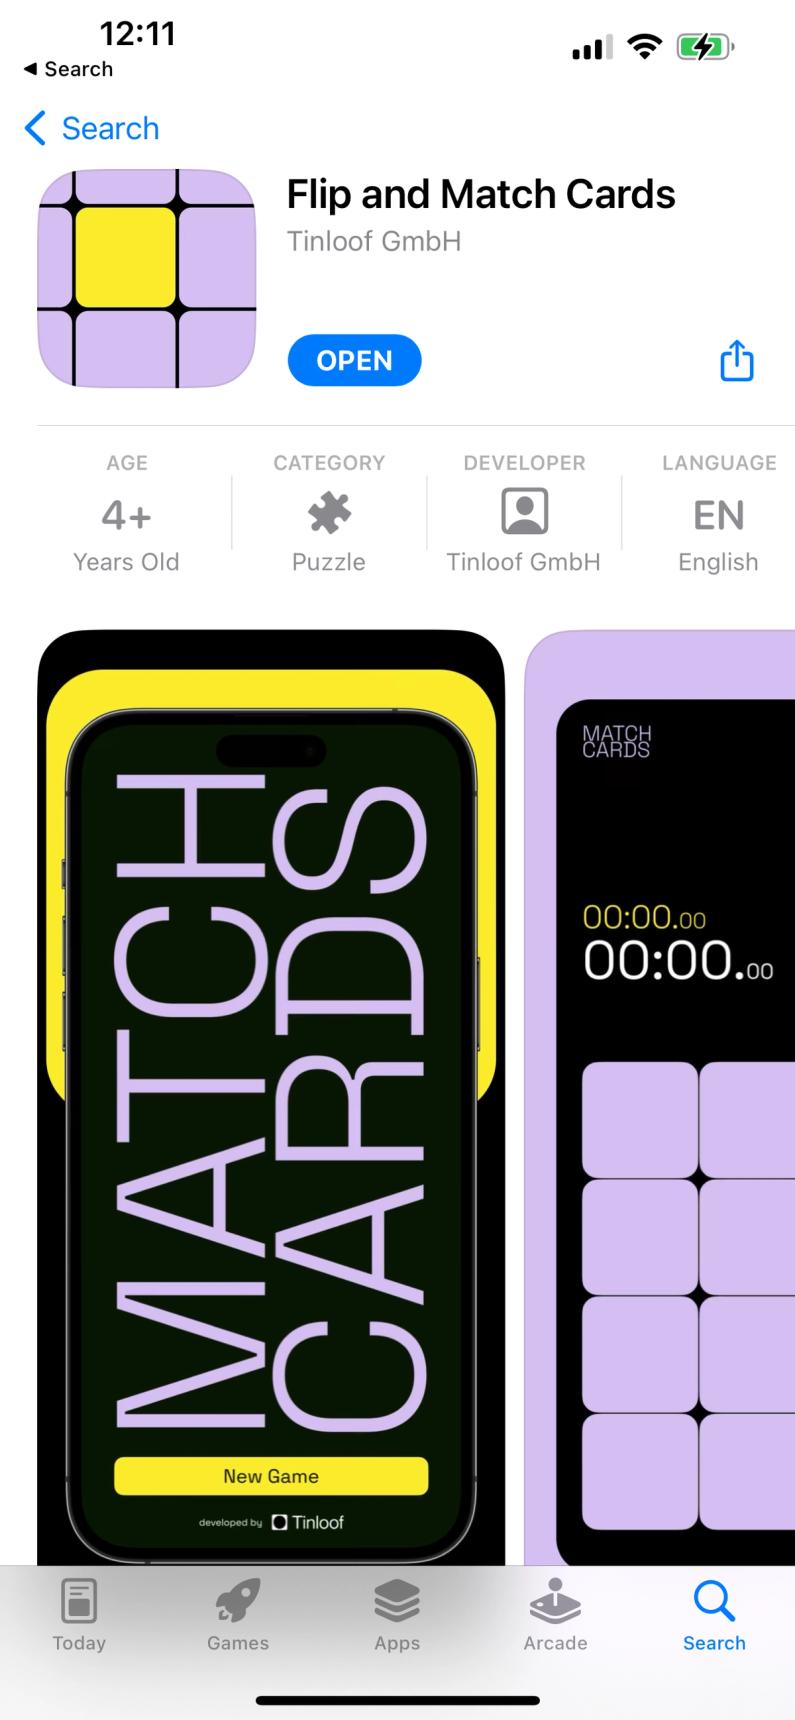 App Store screenshot of Match Cards